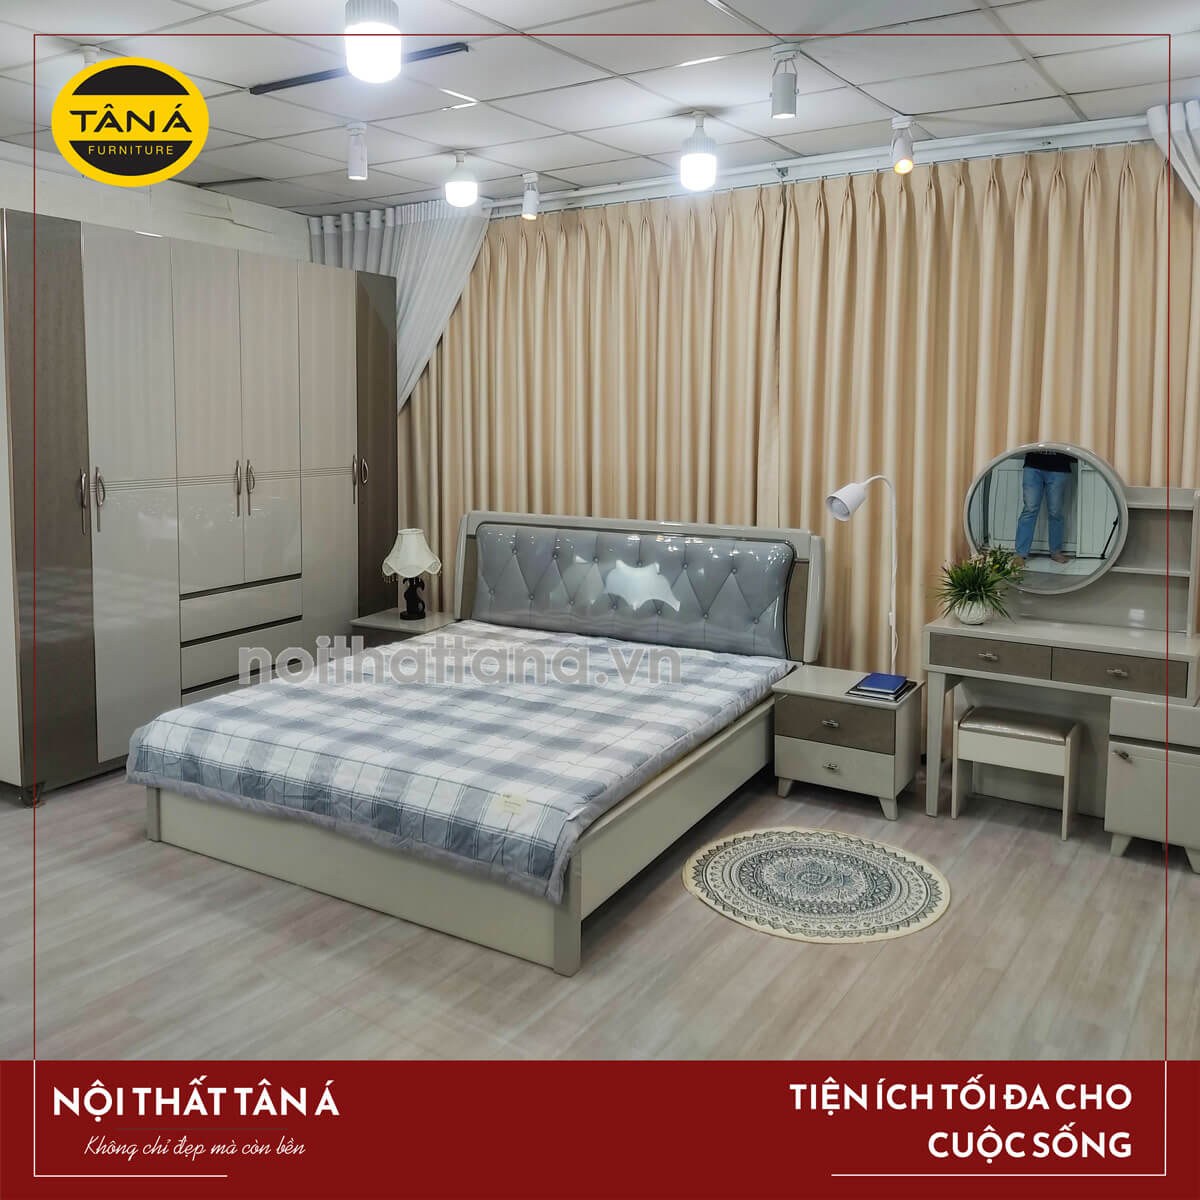 Mua giường ngủ gỗ đẹp giá rẻ đẹp hiện đại